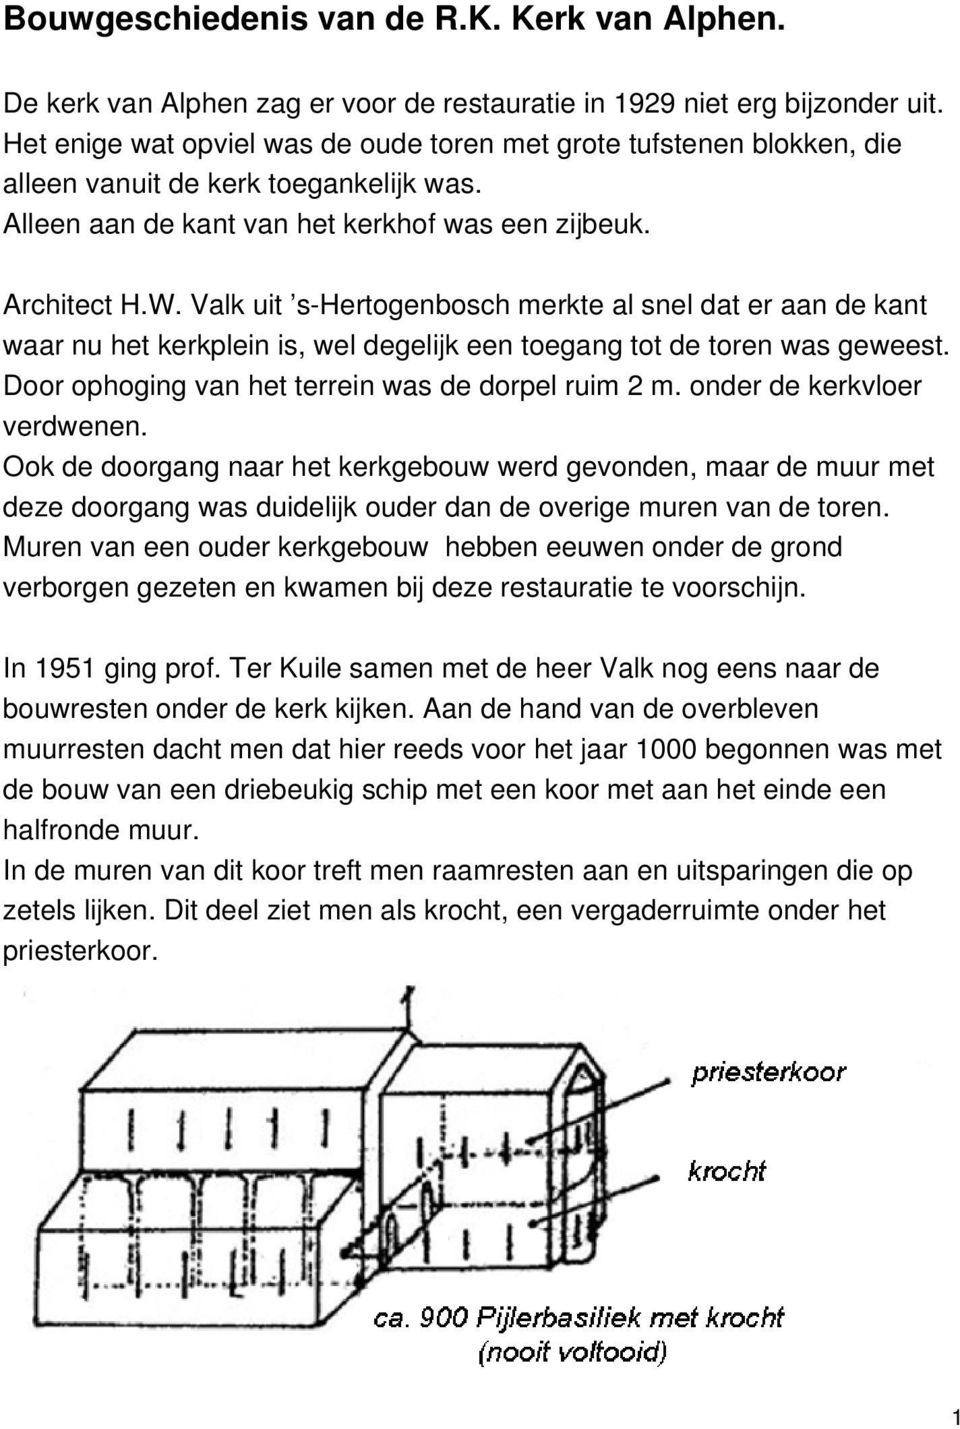 Valk uit s-hertogenbosch merkte al snel dat er aan de kant waar nu het kerkplein is, wel degelijk een toegang tot de toren was geweest. Door ophoging van het terrein was de dorpel ruim 2 m.